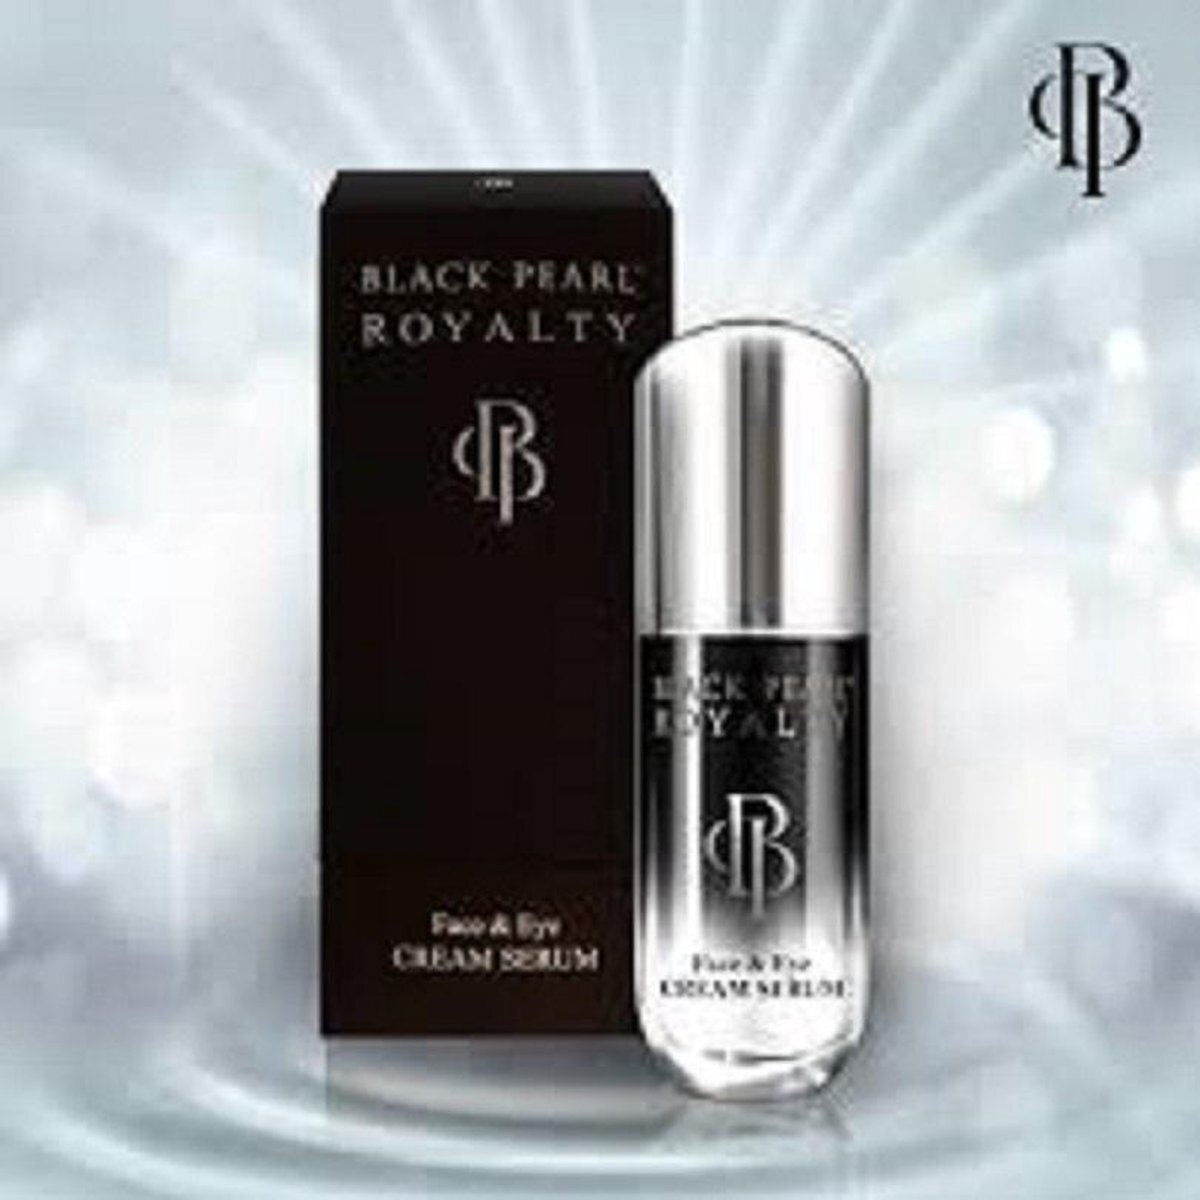 Black Pearl Dead Sea Minerals Dode Zee mineralen Black Pearl Royalty Face & Eye Cream Serum Dode Zee mineralen